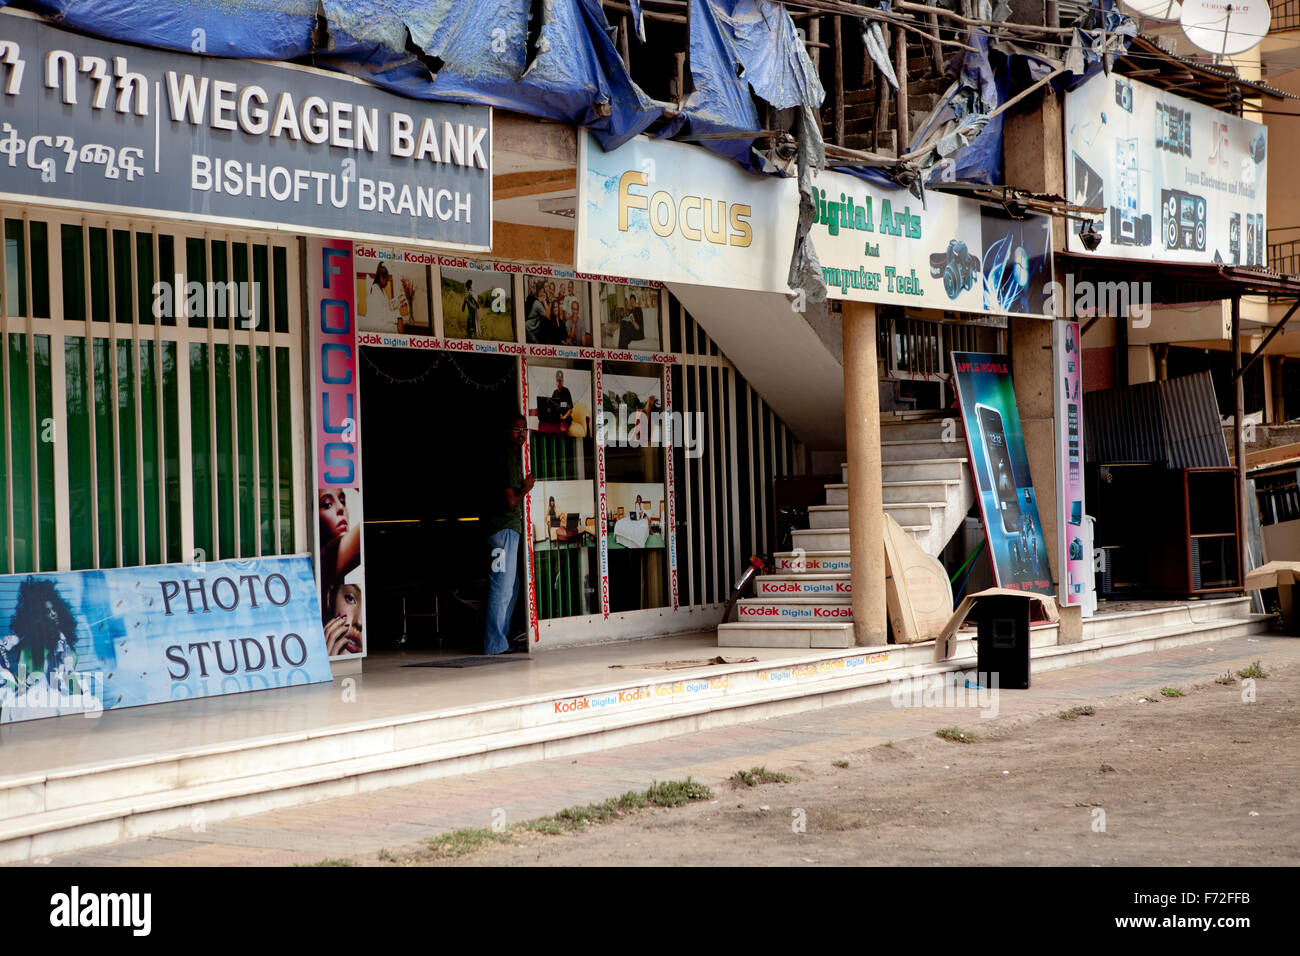 Wegagen Bank, Studio fotografico Focus, Bishoftu, Debre Zeyit, Addis Abeba, Etiopia, Corno d'Africa, Africa orientale, Africa Foto Stock